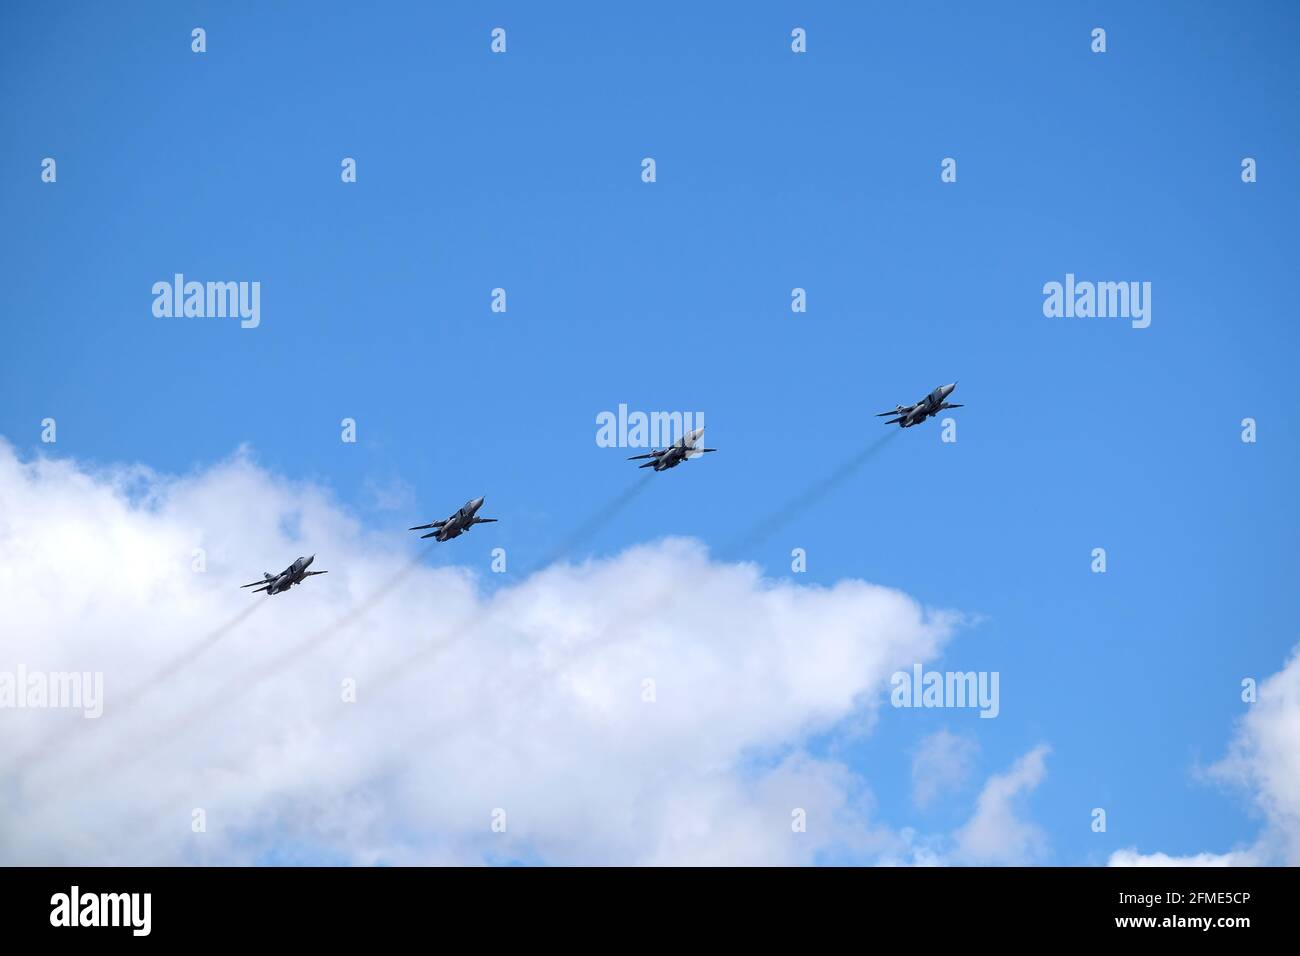 MOSCOU, RUSSIE - 7 mai 2021 : groupe d'bombardiers militaires tactiques russes SU-24 en première ligne, volant rapidement dans le ciel bleu lors d'une répétition de parade dans le ciel Banque D'Images